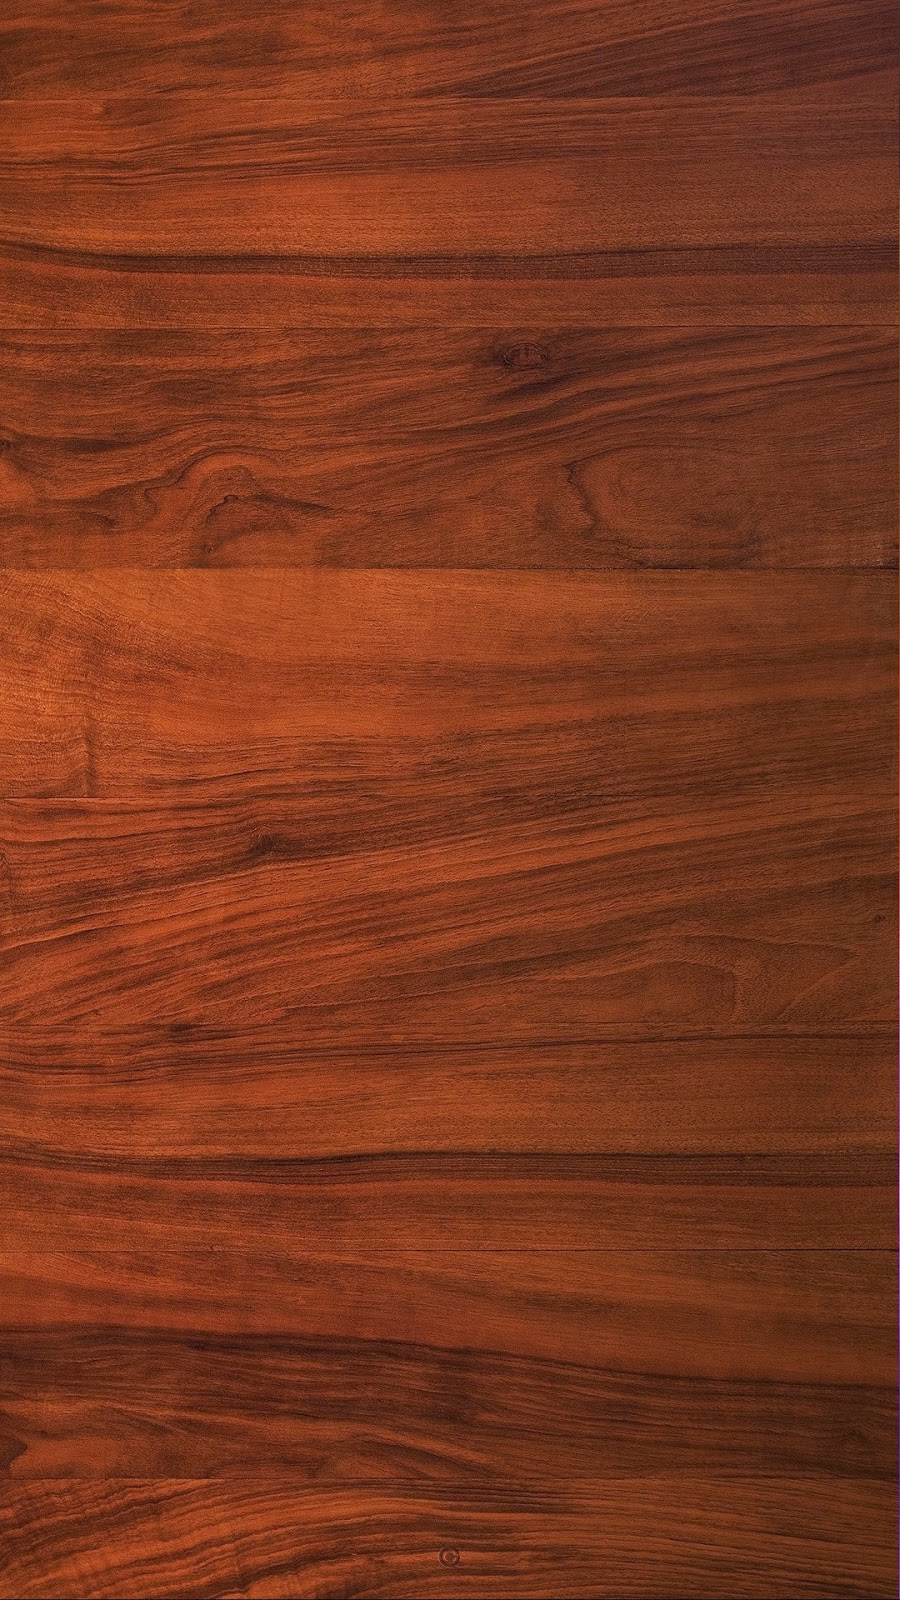 madera fondo de pantalla para iphone,madera,suelos de madera,madera dura,mancha de madera,piso